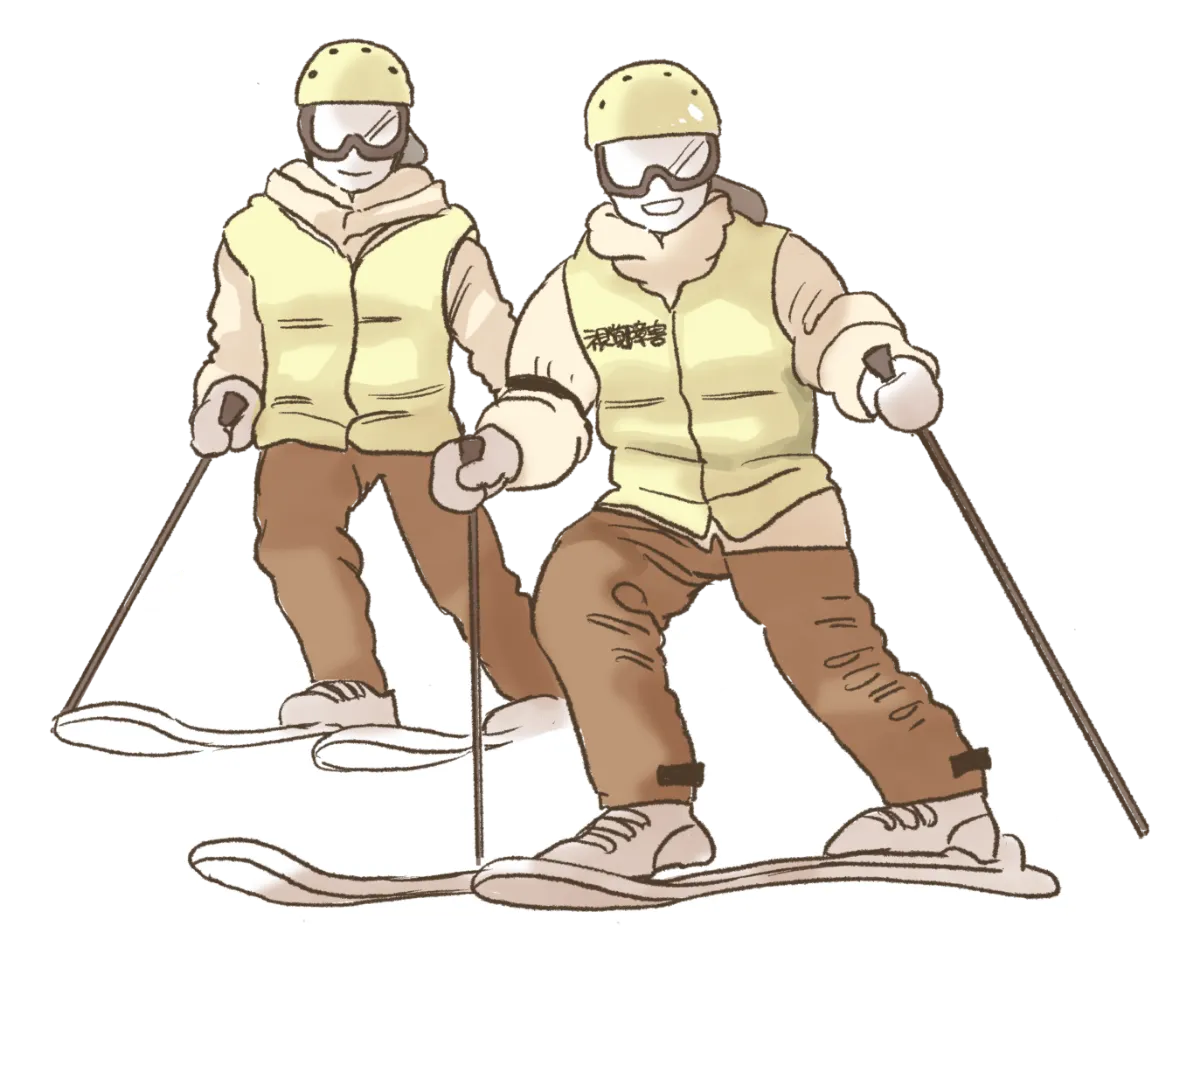 視覚障害者とヘルパーが縦に並んでスキーをしているイラスト